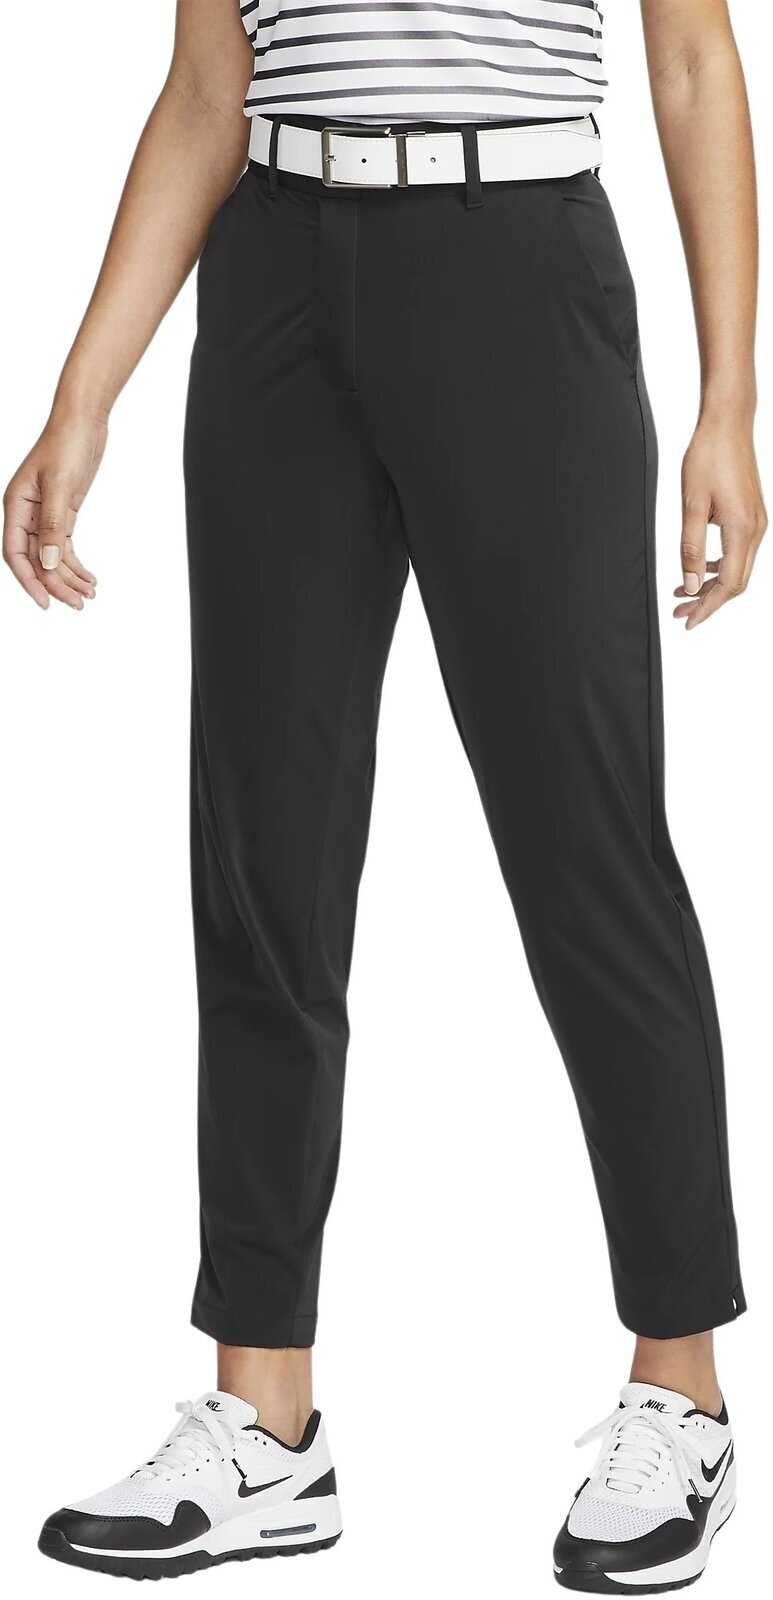 Housut Nike Dri-Fit Tour Womens Pants Black/White XL